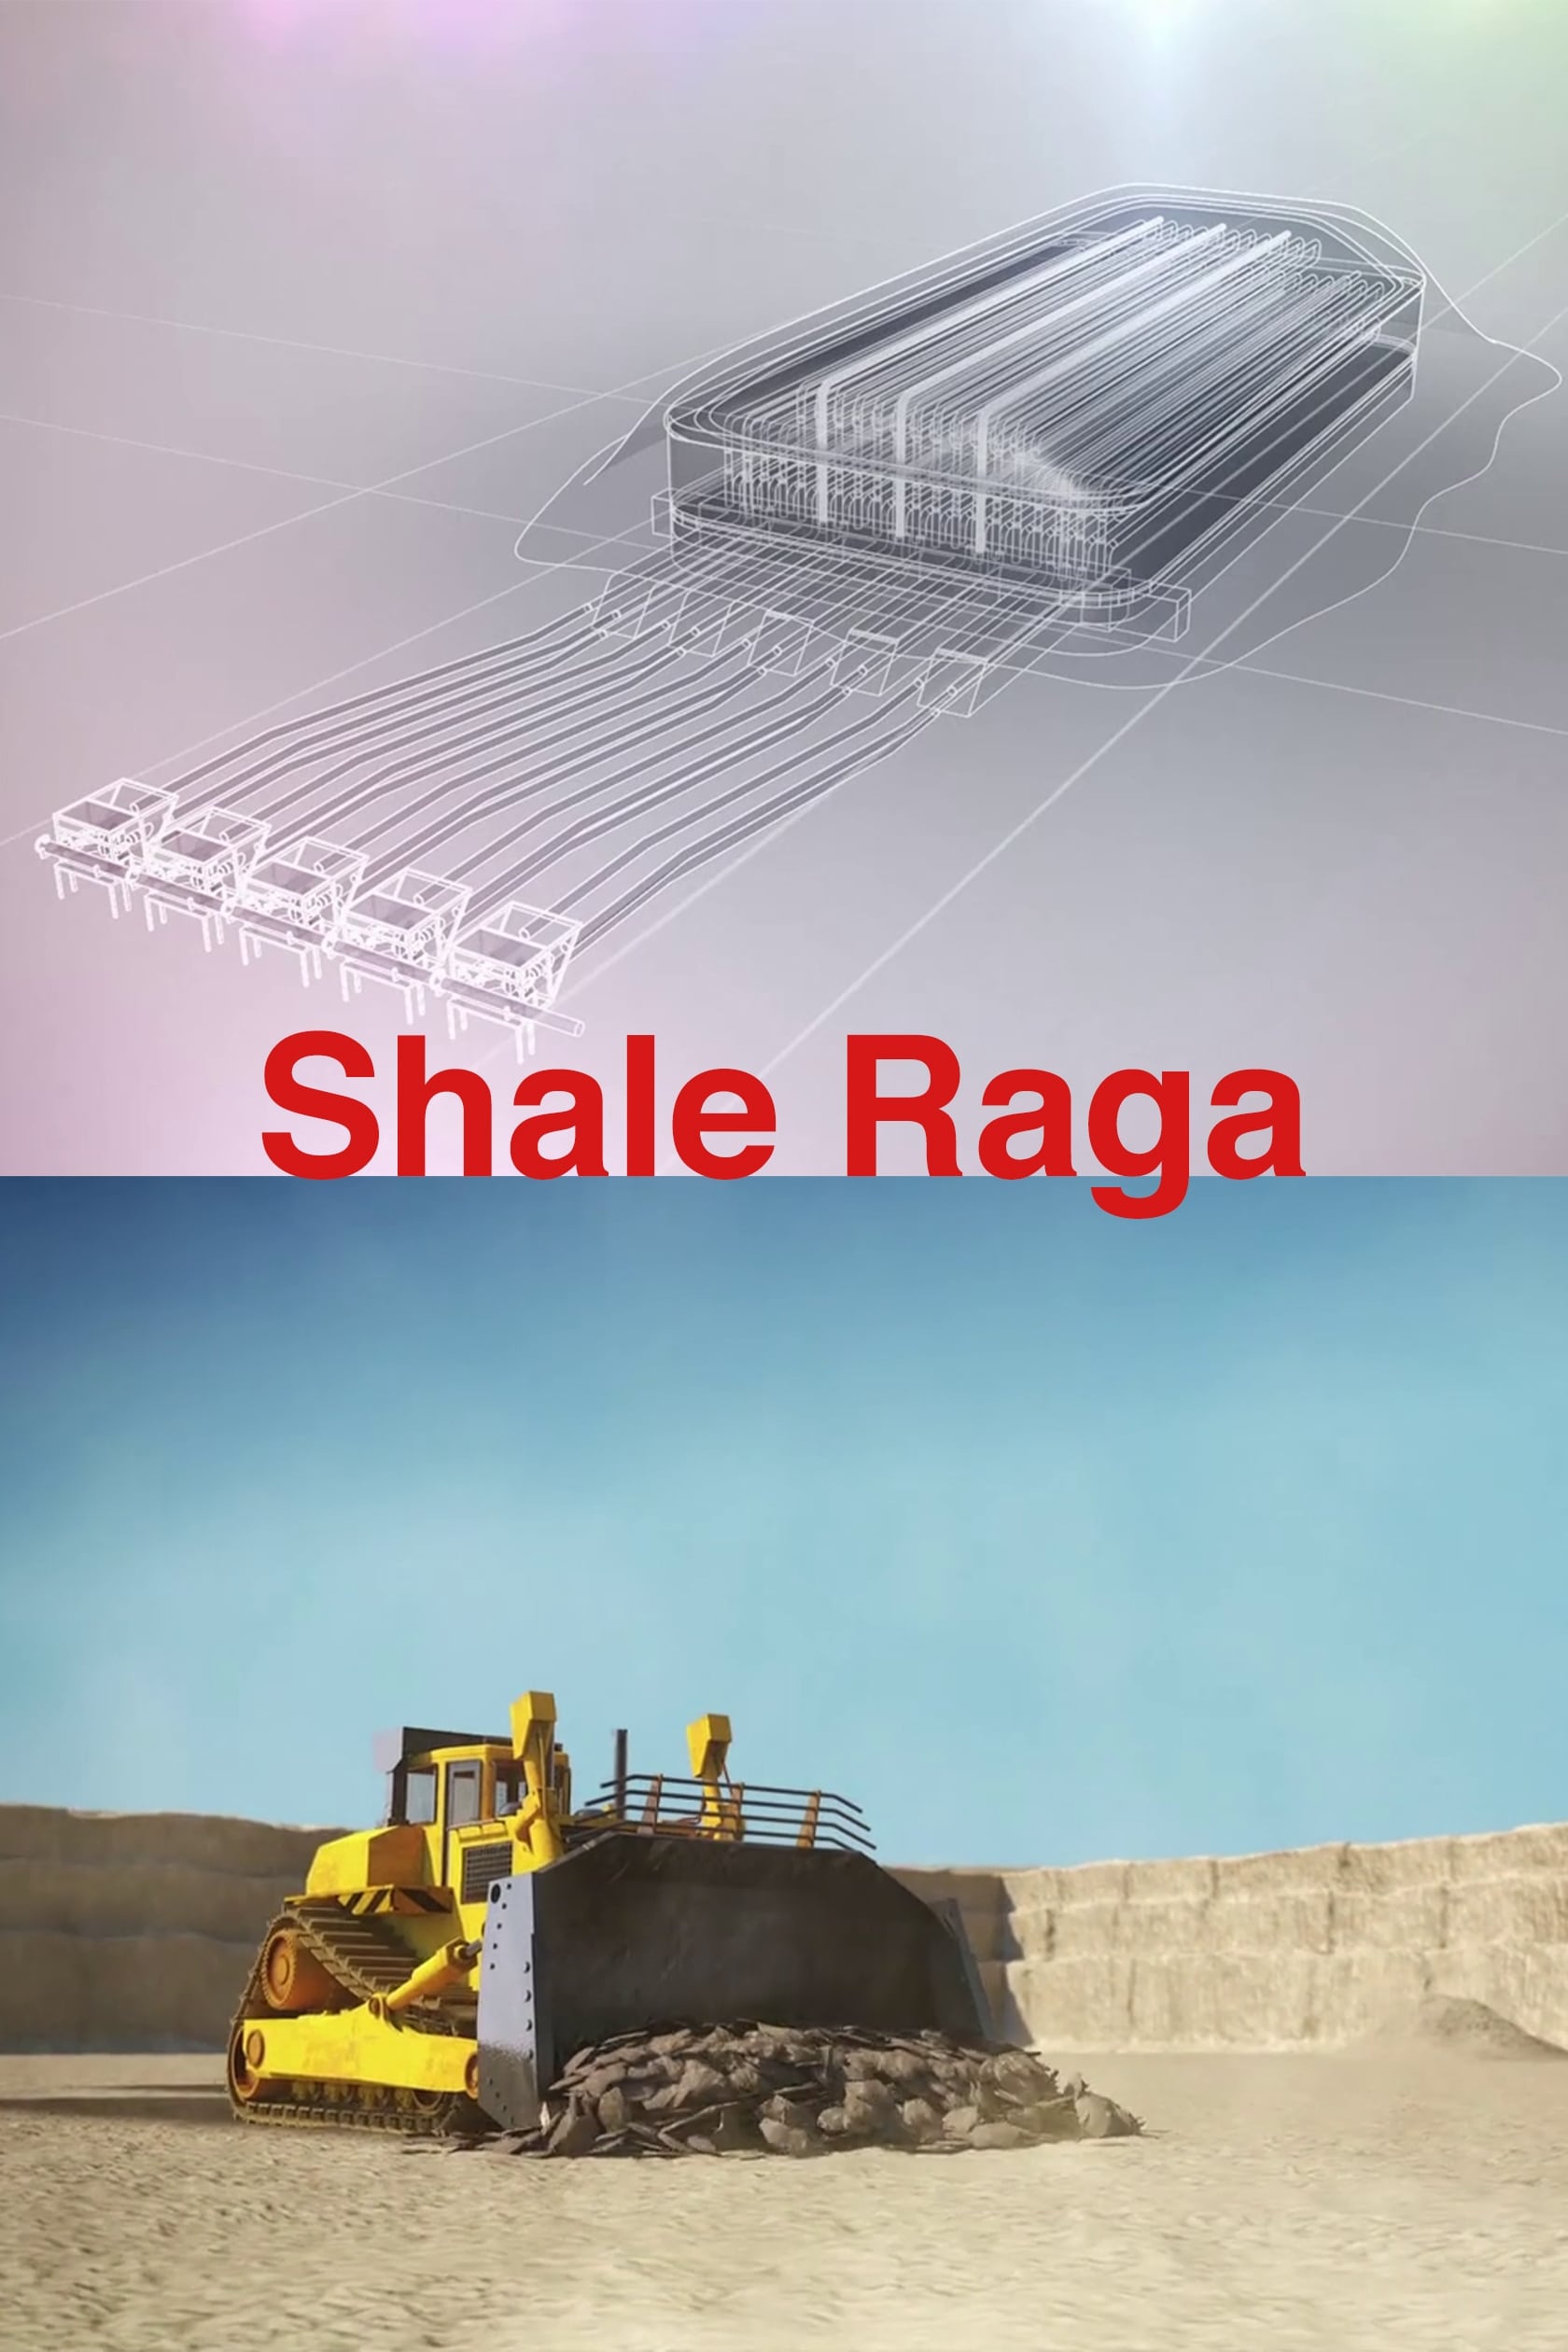 Shale Raga